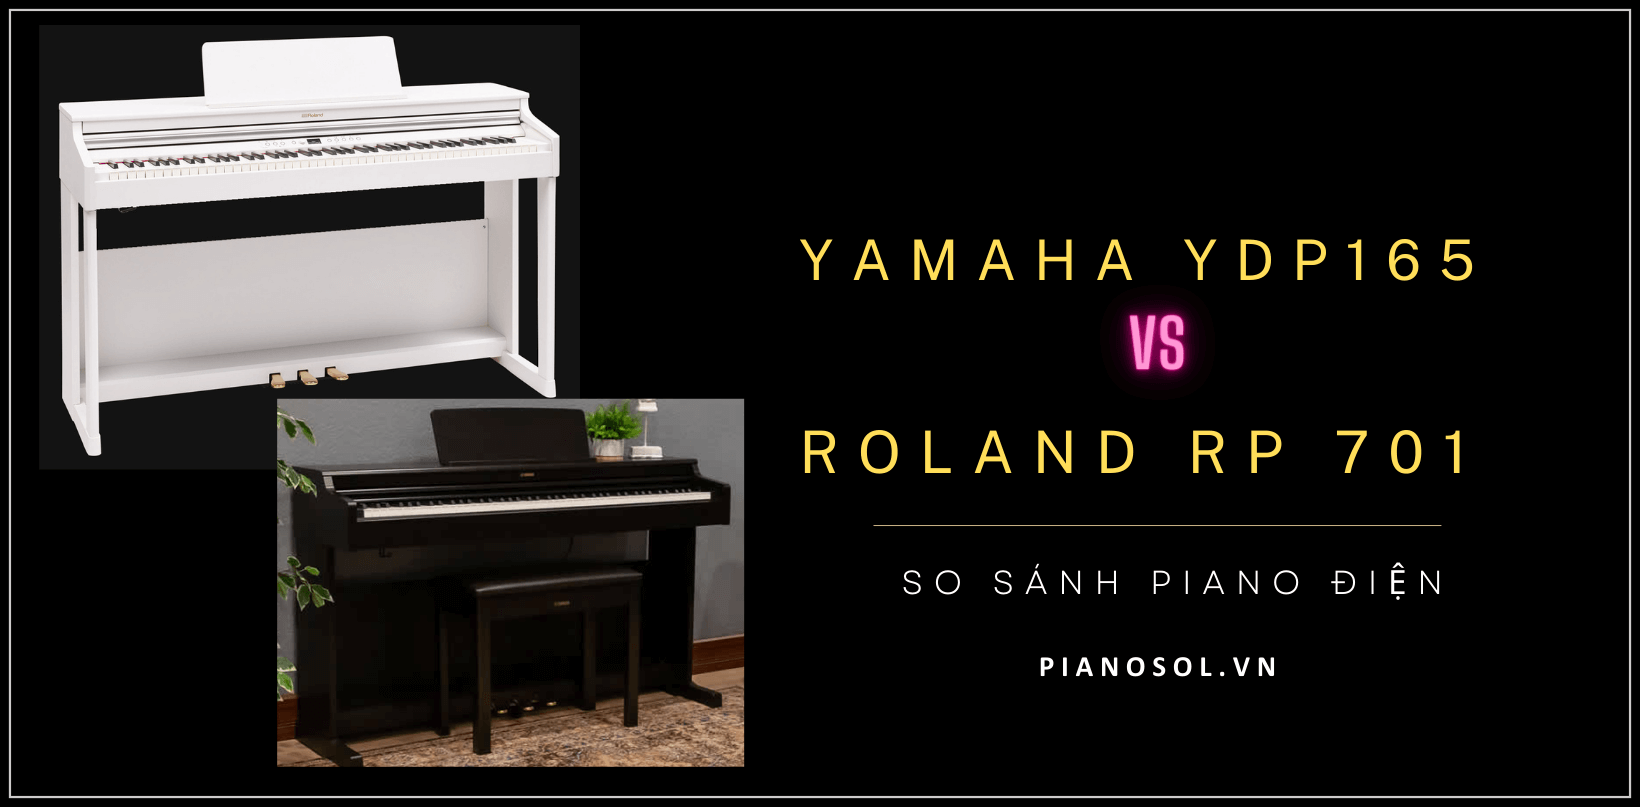 So sánh Piano điện Yamaha YDP165 và Roland RP701